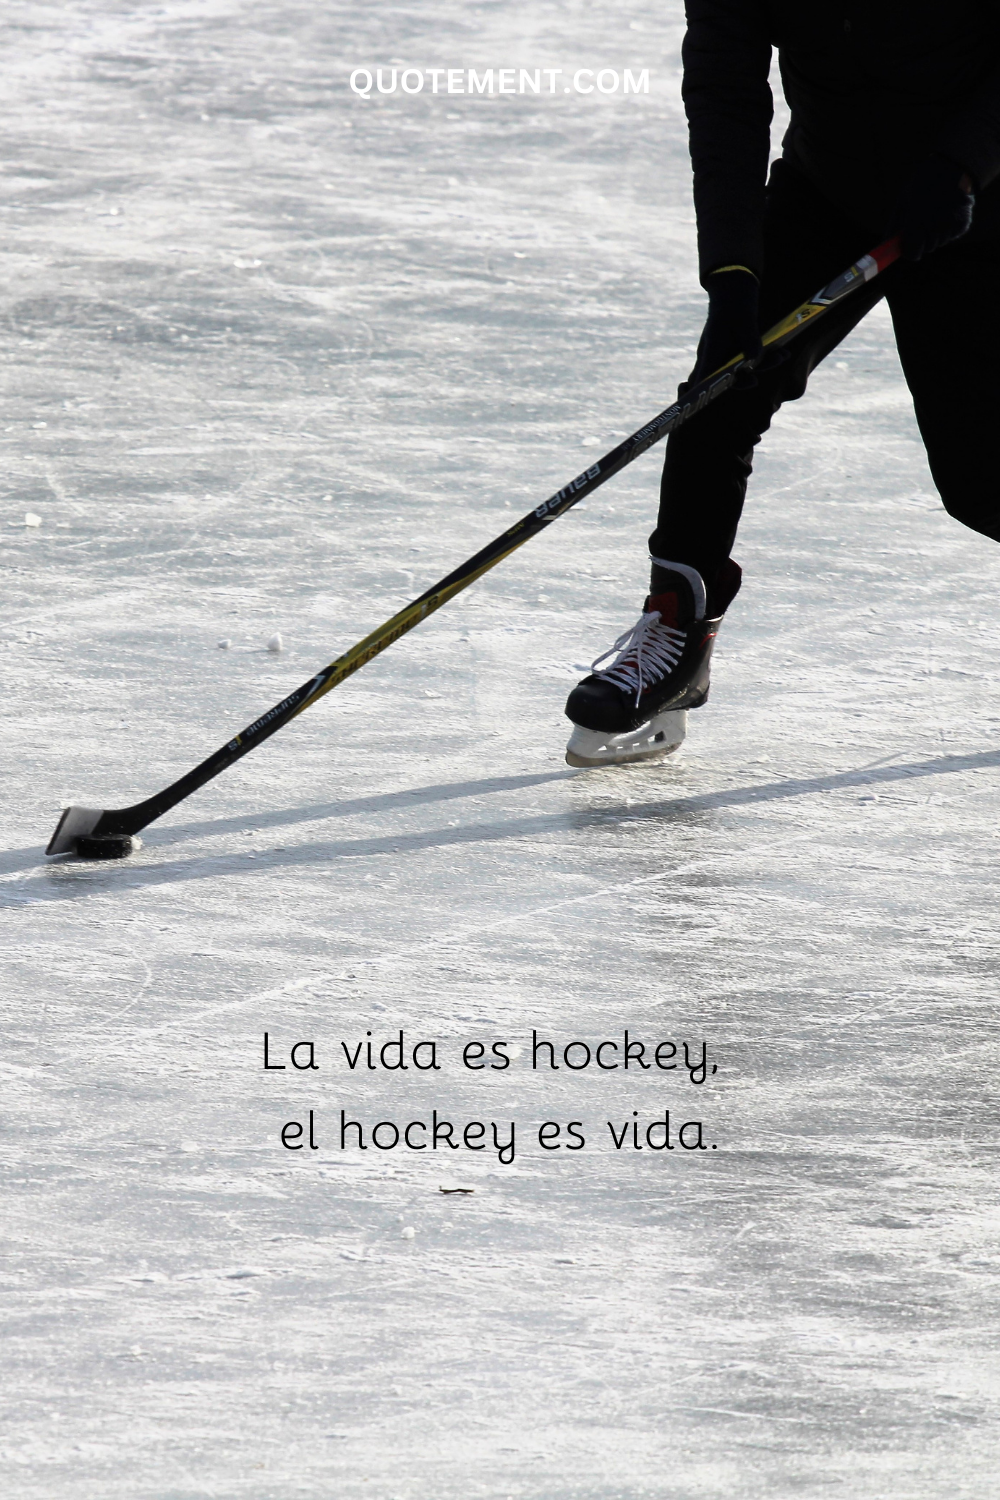 La vida es hockey, el hockey es vida.